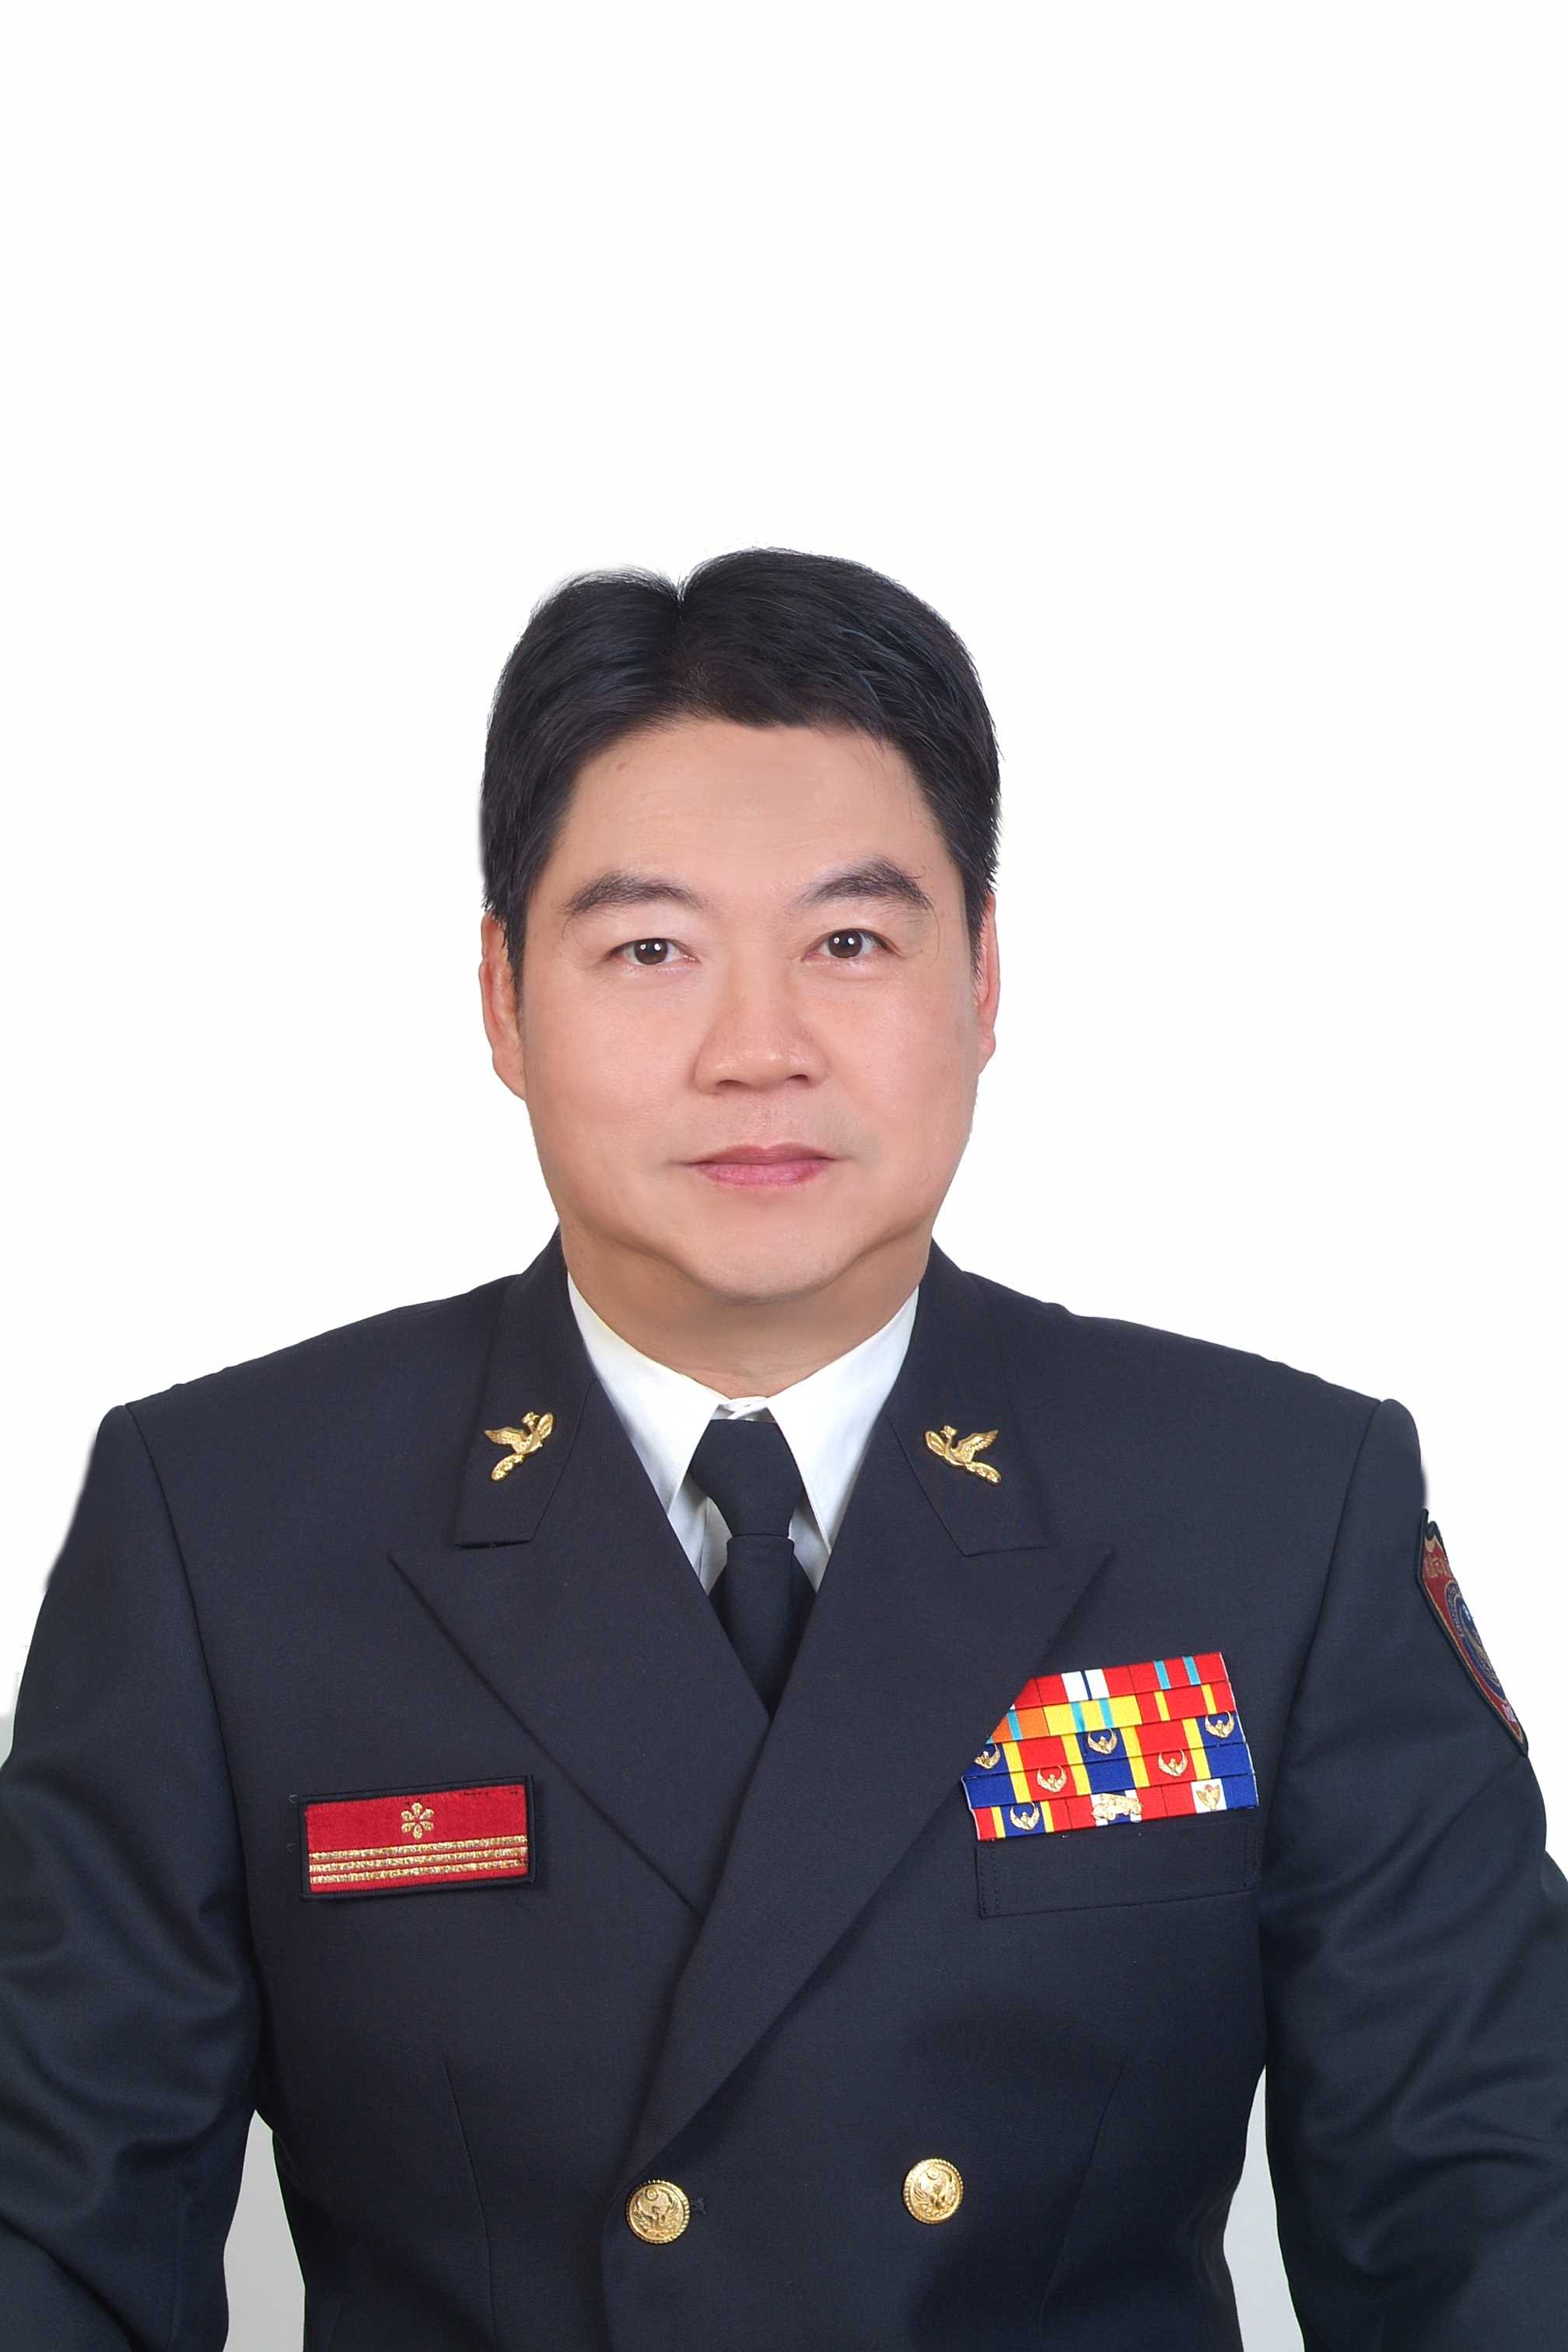 Hualien County Fire Bureau－Deputy Director-General－Wu, Zhao-yuan